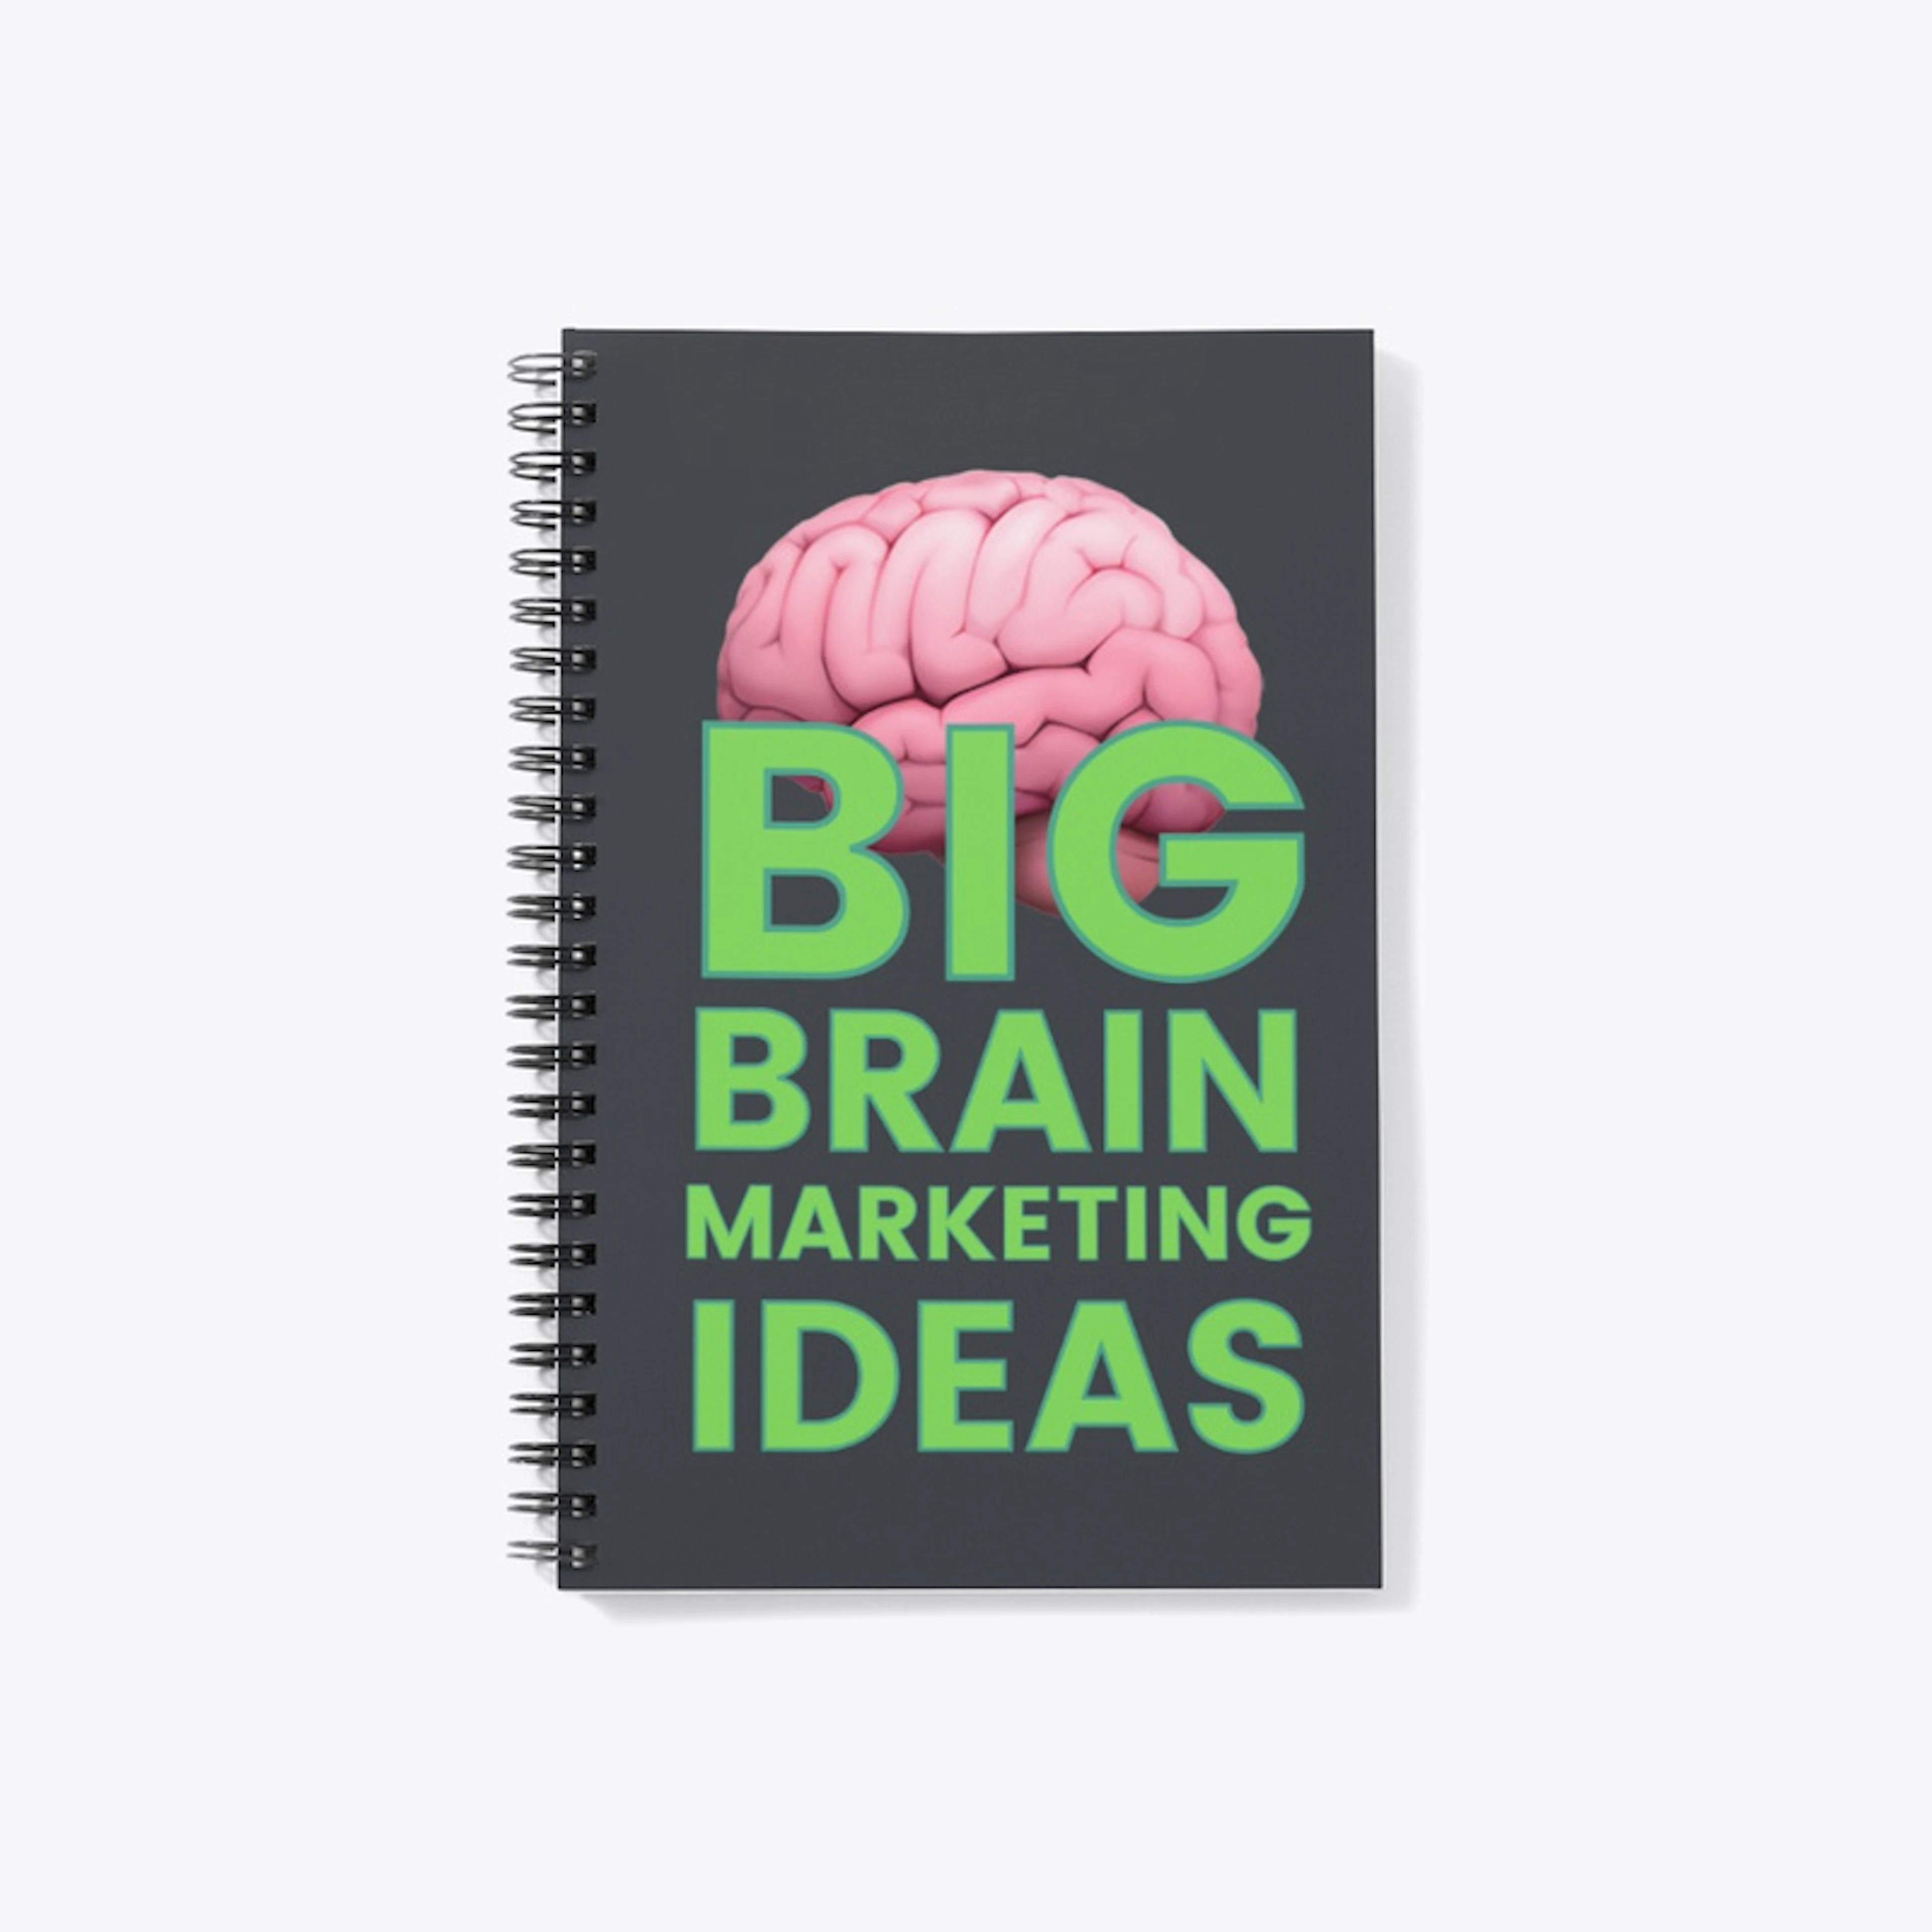 Big Brain Marketing Ideas